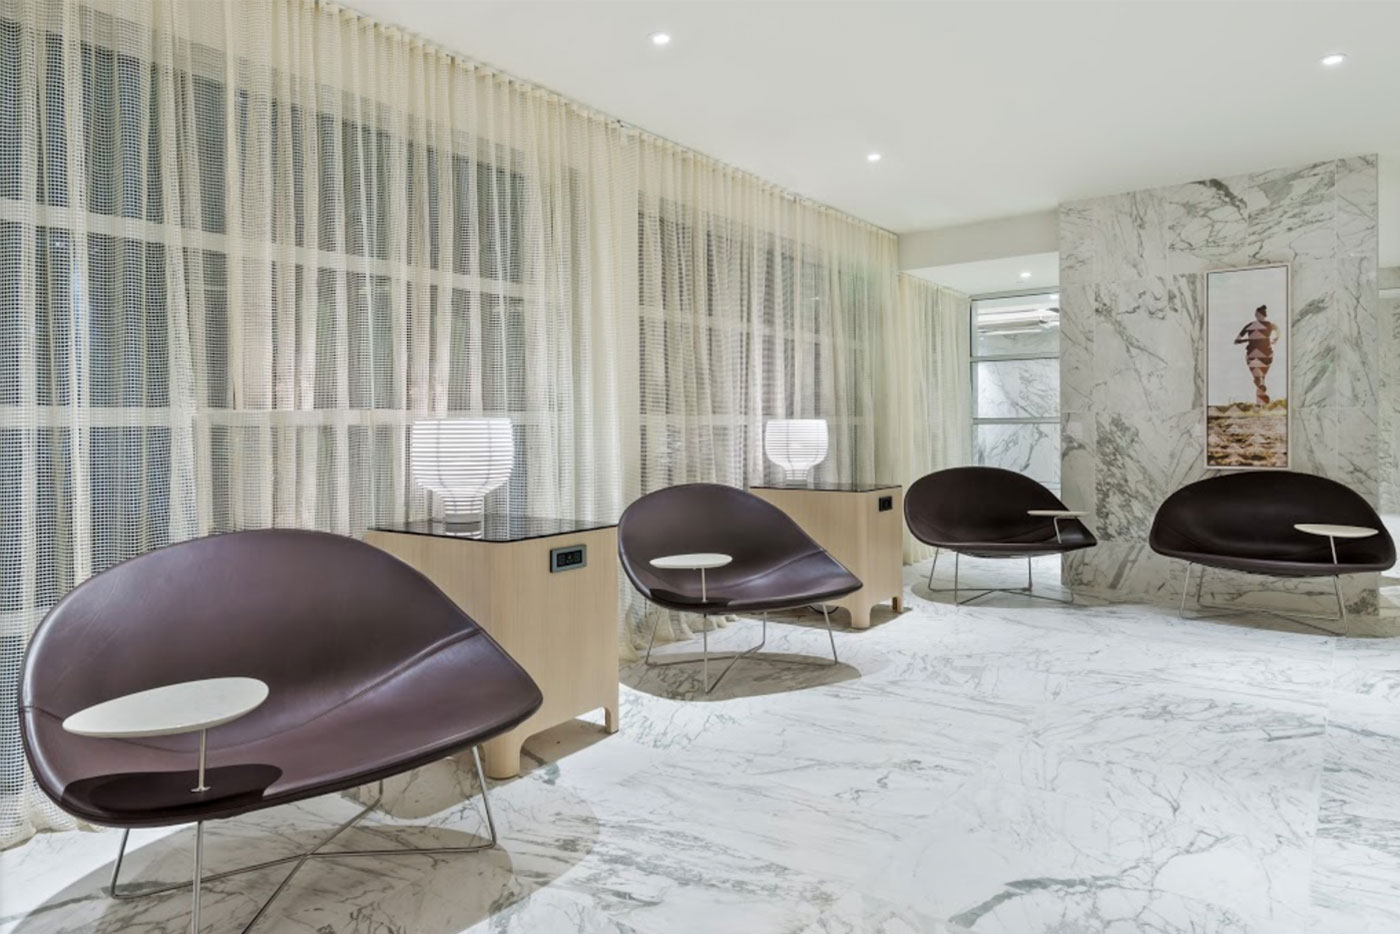 Hotel furniture - Contraxx Furniture Custom Design Made In USA Living Space